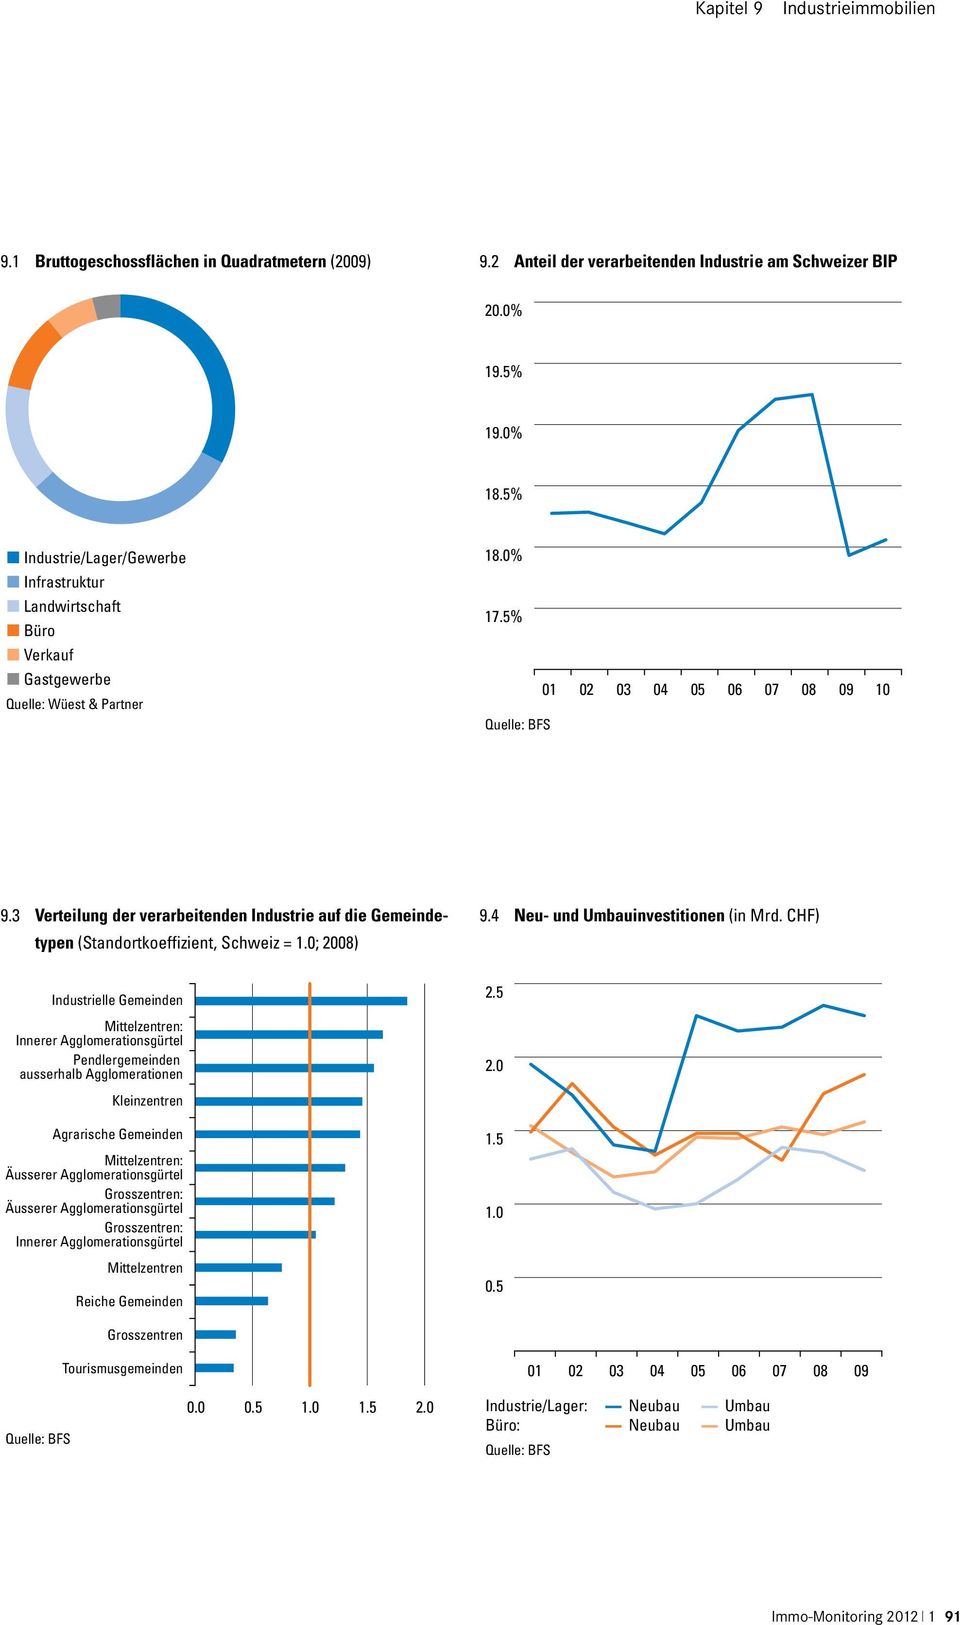 3 Verteilung der verarbeitenden Industrie auf die Gemeindetypen (Standortkoeffizient, Schweiz = 1.0; 2008) 9.4 Neu- und Umbauinvestitionen (in Mrd.